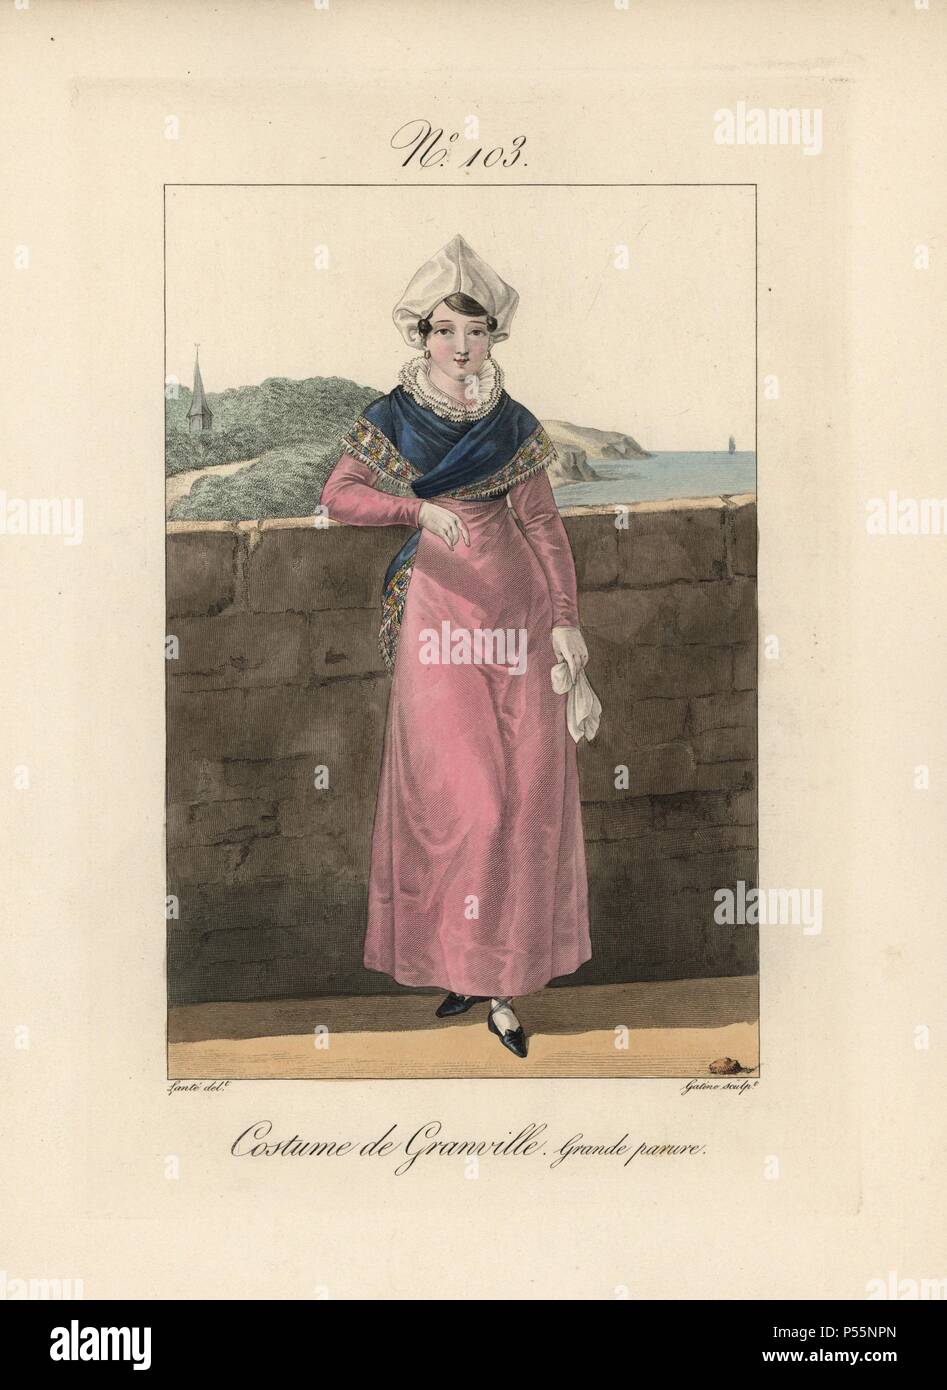 Kostüm von Granville. Eine Frau in den Putz. Diese Frisur ist mit der Bezeichnung "CONINE.' Es ist außergewöhnlich, dass diese einfache Stil kann so elegant erscheinen. Die Motorhaube wird von Batist oder organdy gemacht. Es ist mit einem schönen Schal gekoppelt, und manchmal ein seidenkleid. Handcolorierte mode Platte Illustration von LANTE von Gatine von louis-marie's Lante' Kostüme des Gravierten femmes du Pays de Caux", 1827/1885. Mit ihren hohen Elsässischen spitze Hüte, die Frauen von Caux und der Normandie waren berühmt für die Eleganz und Stil. Stockfoto